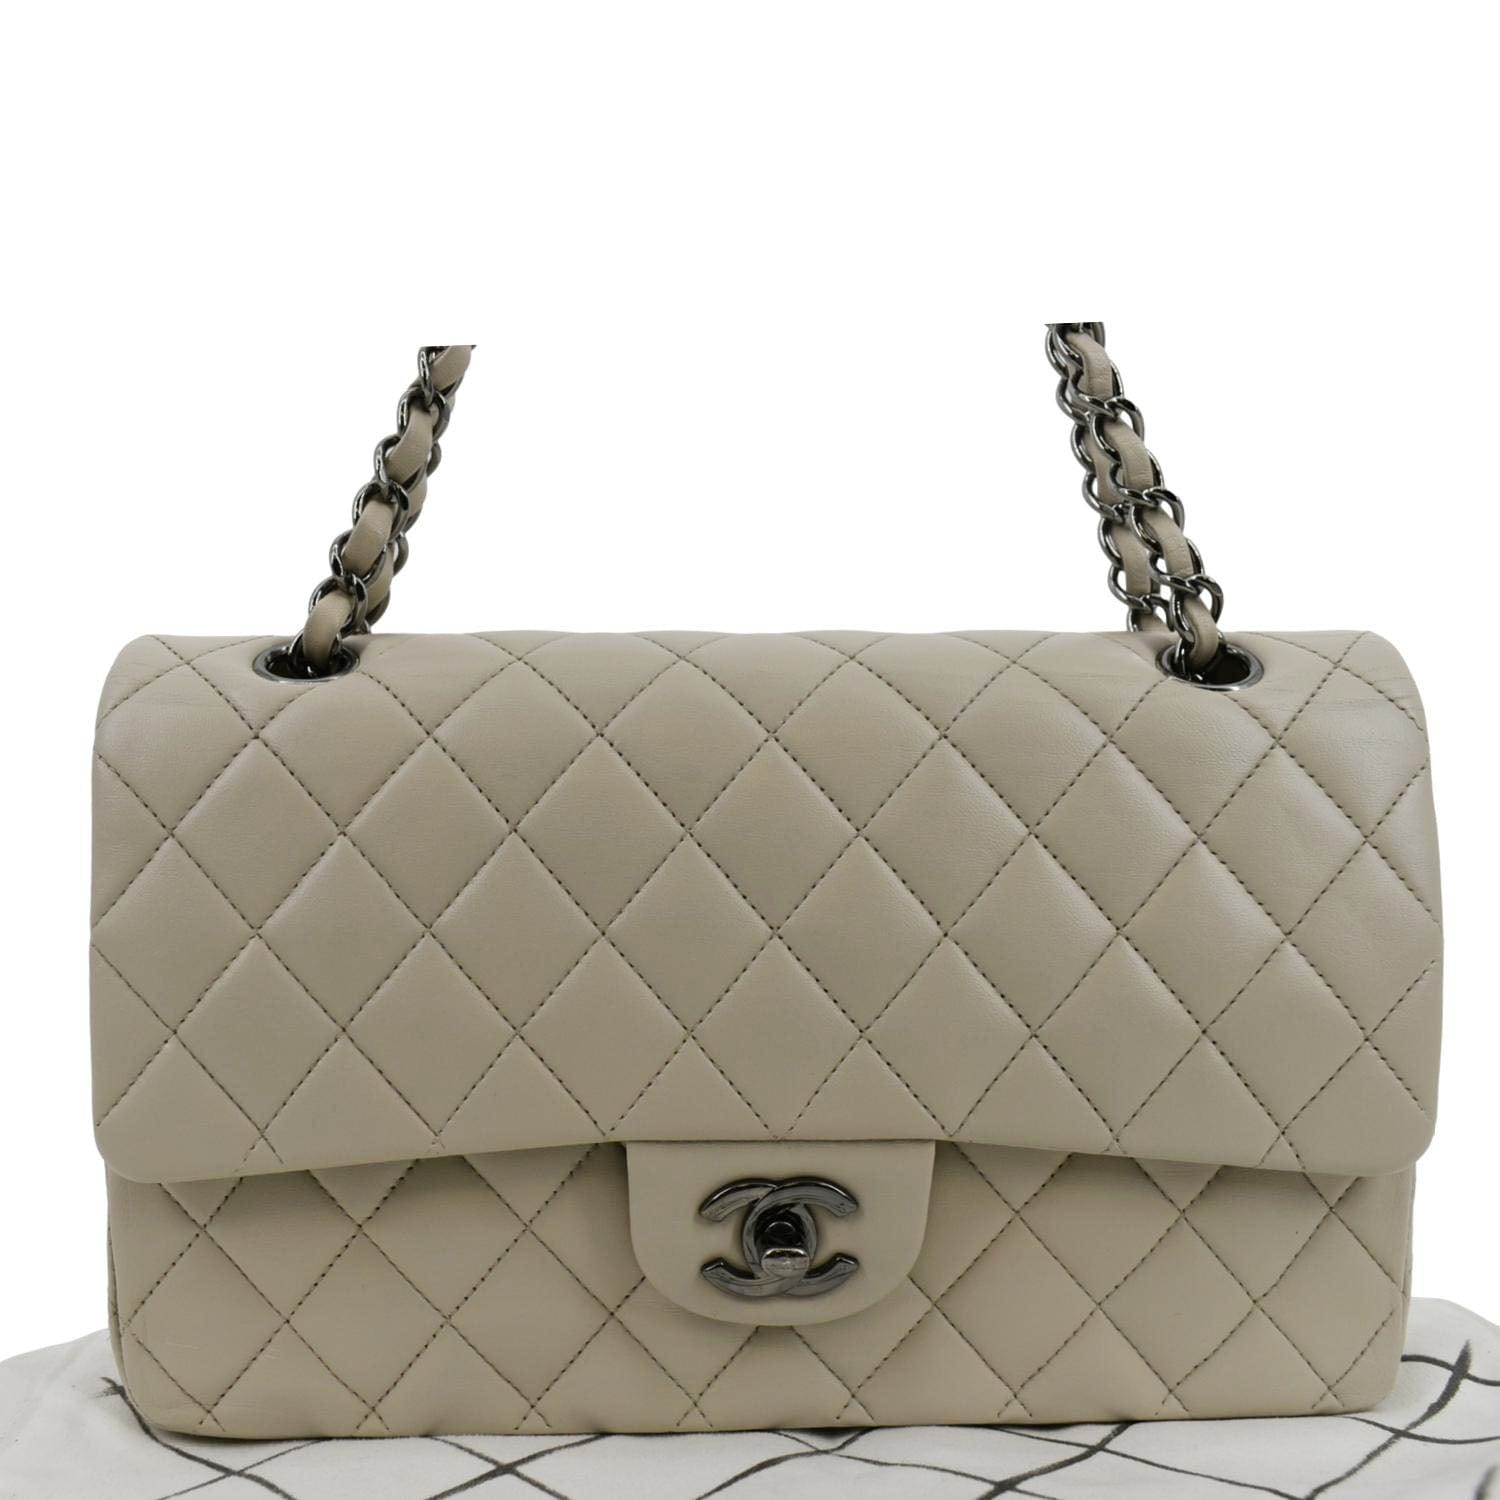 Chanel Medium Classic Double Flap Beige Shoulder Bag